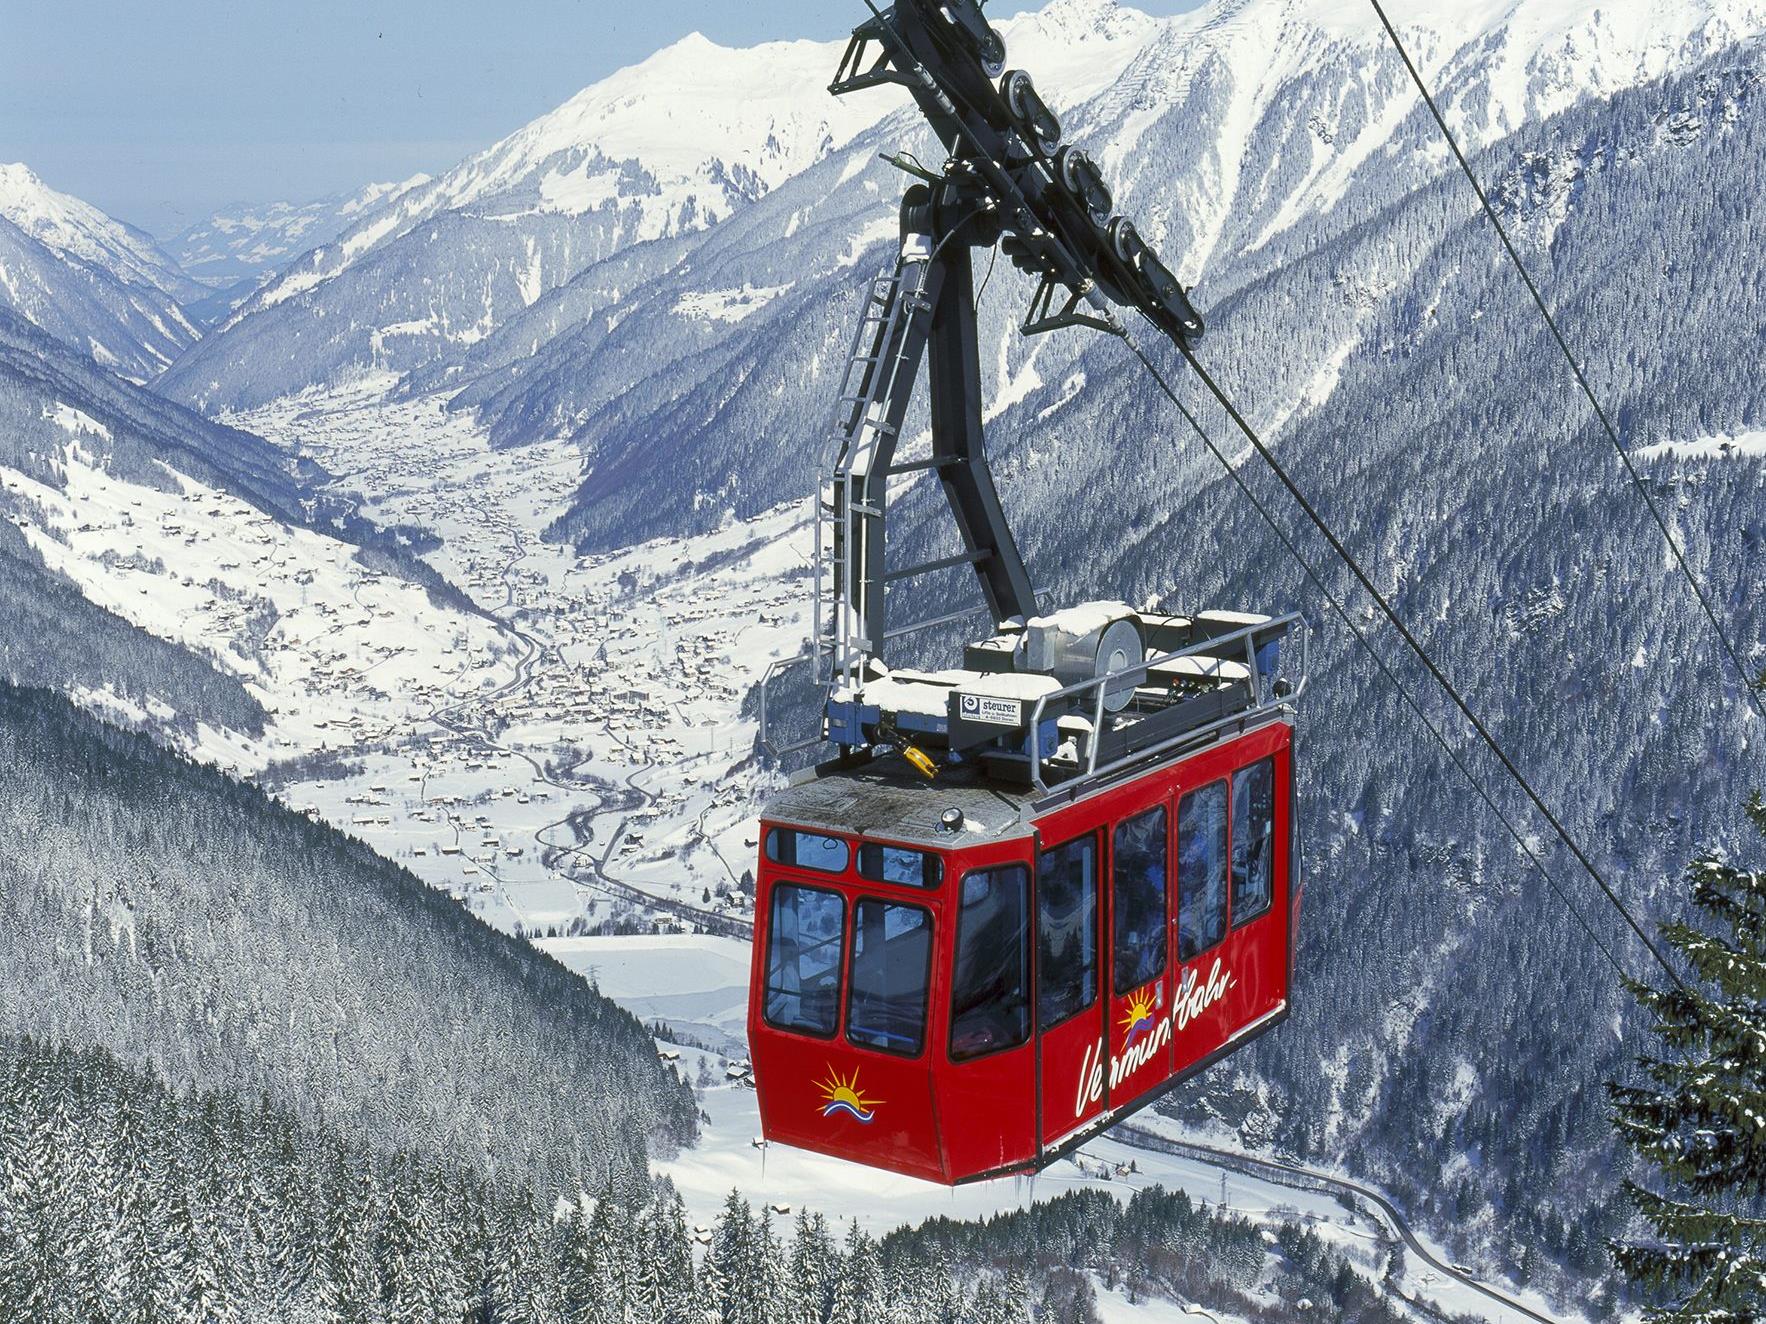 Vermuntbahn ab sofort früher in Betrieb – früherer Start für Skitourengeher/innen möglich.